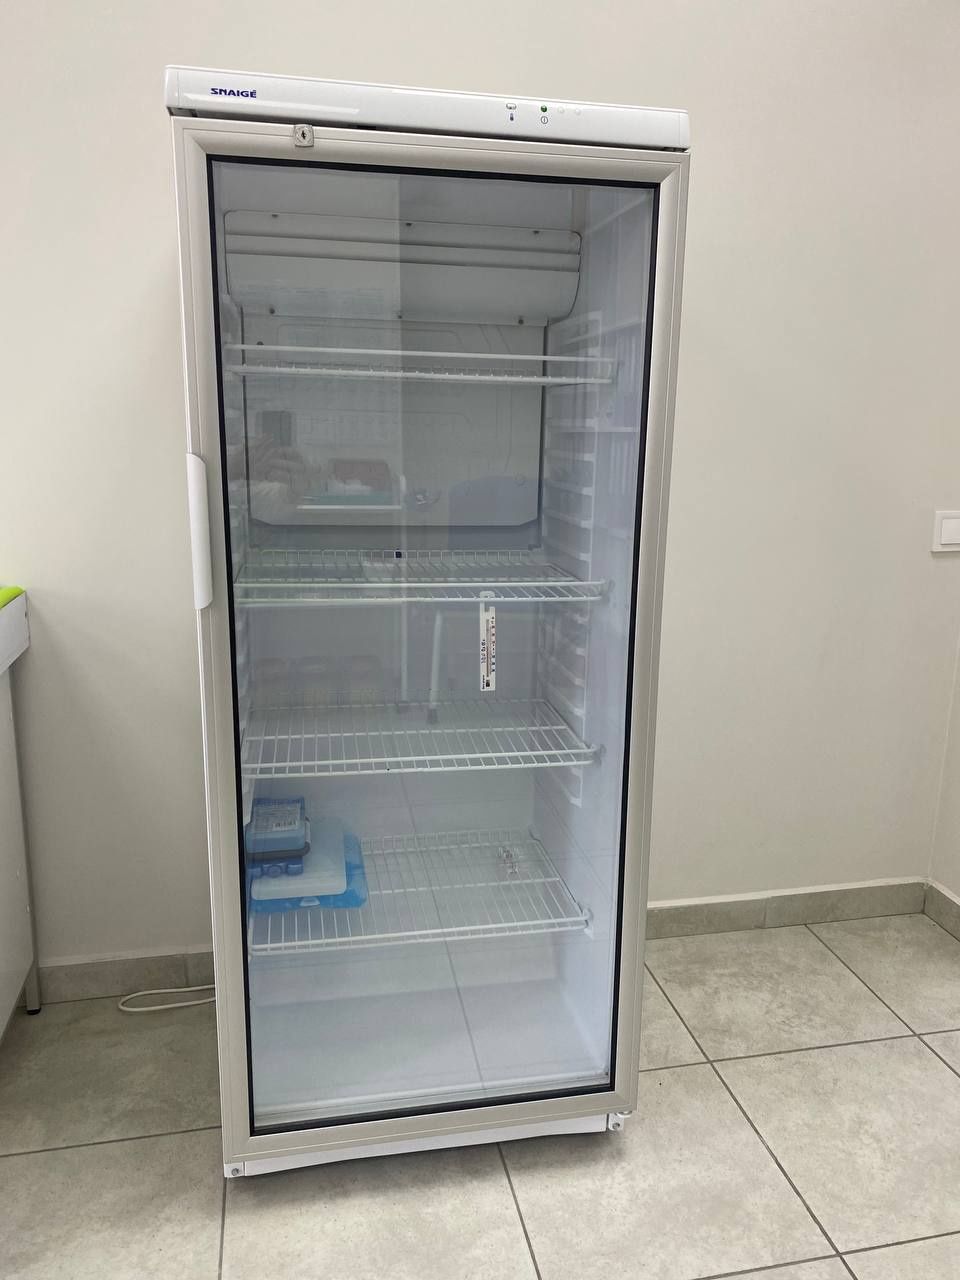 Італійський холодильник SNAIGE